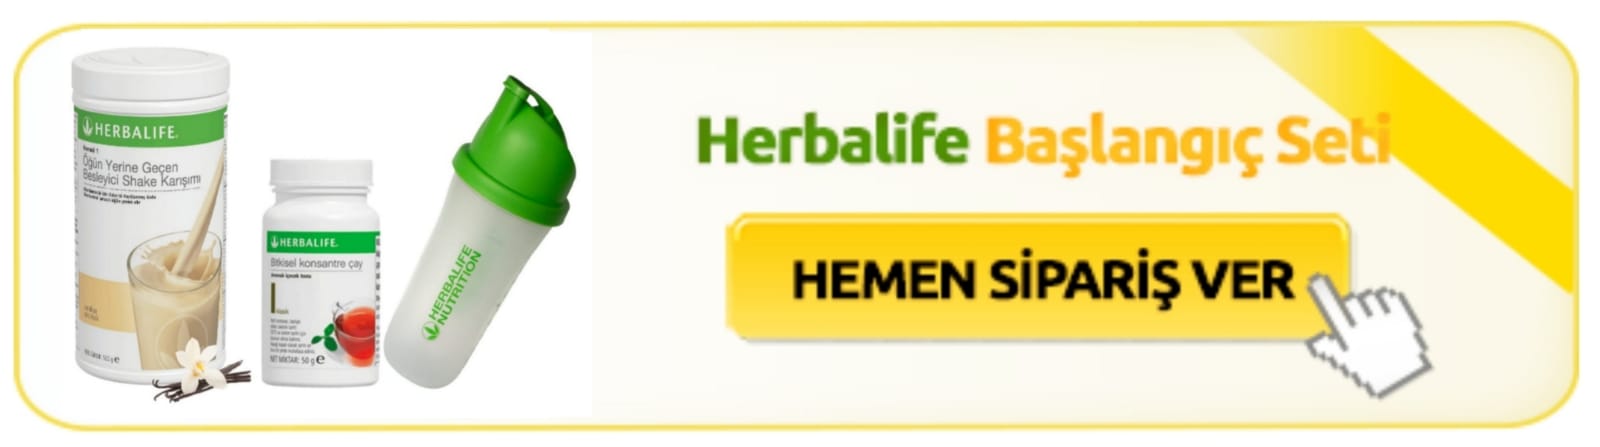 herbalife-baslangic-set.jpg - 49.08 KB